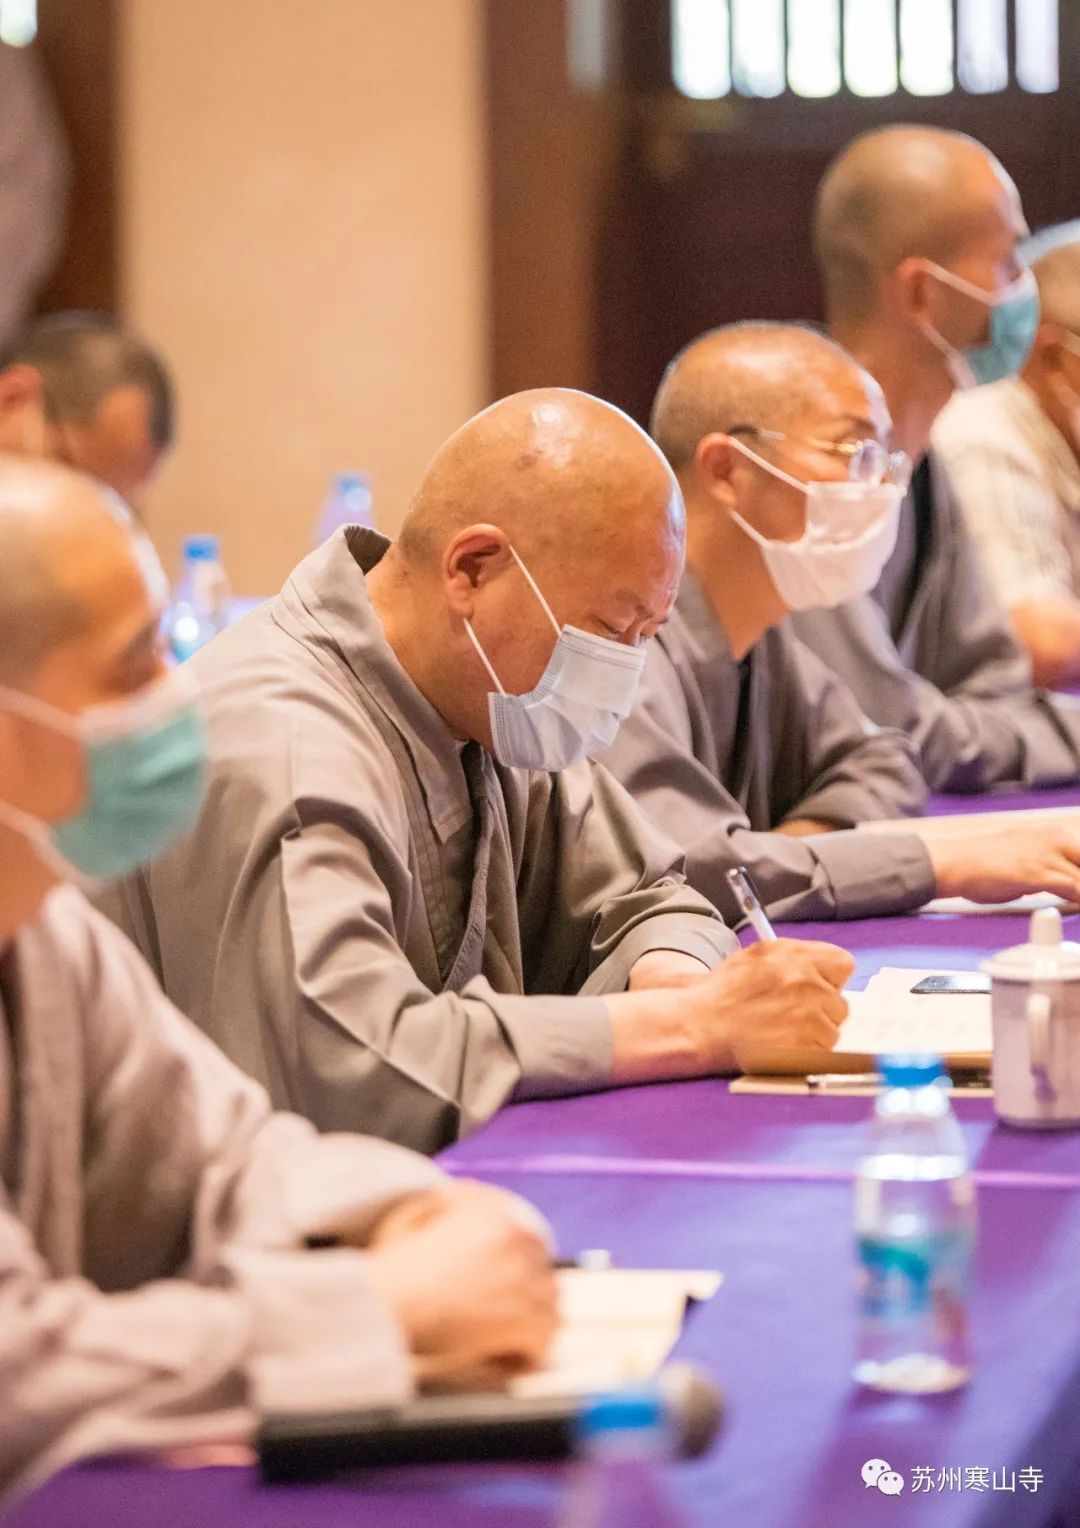 苏州寒山寺第八期和合讲座 净因法师宣讲“人间佛陀”的主题思想